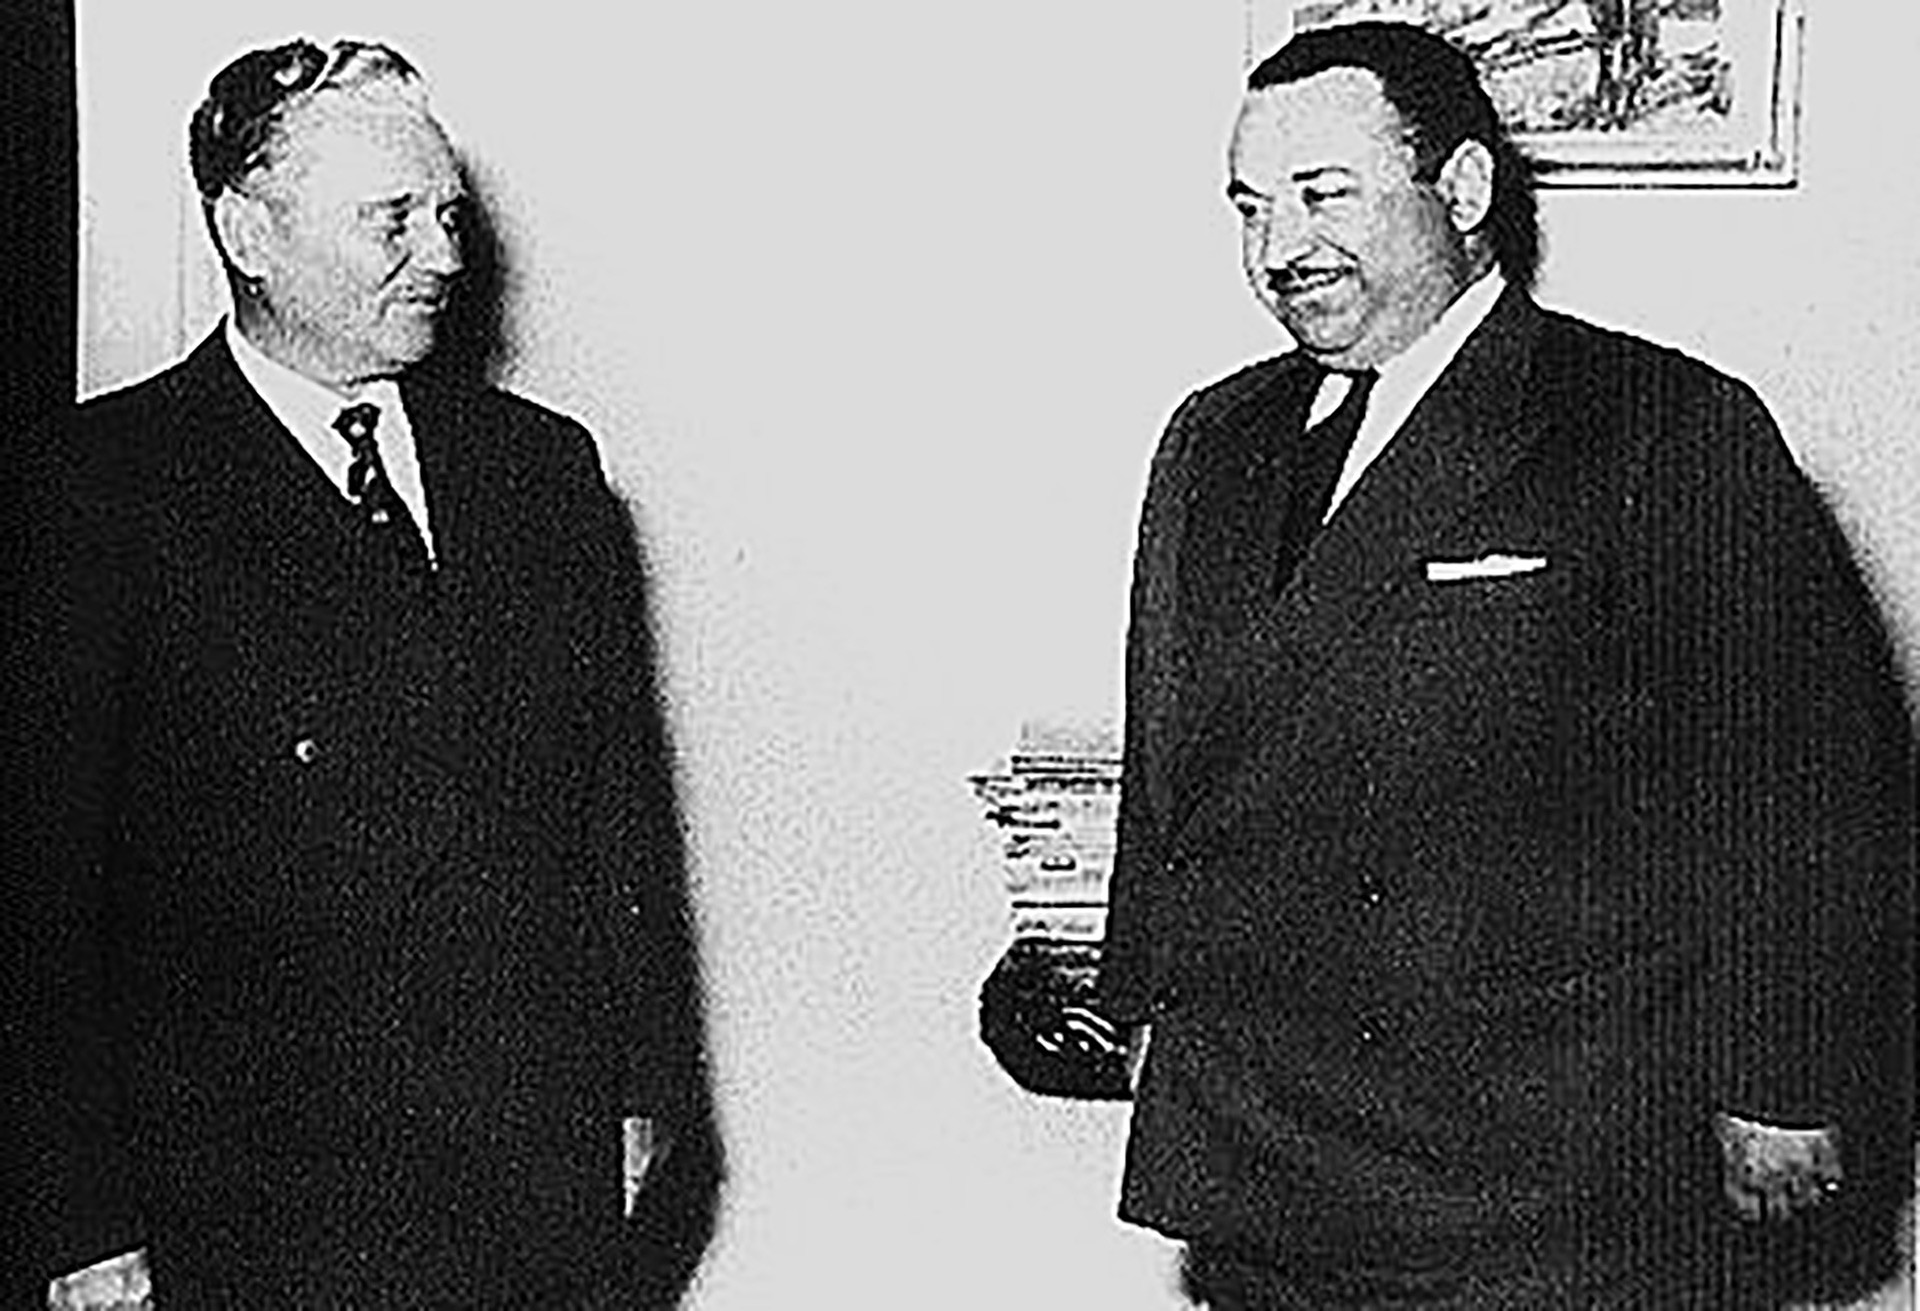 Marschal Josip Broz Tito mit Josef Grigulewitsich (rechts)
